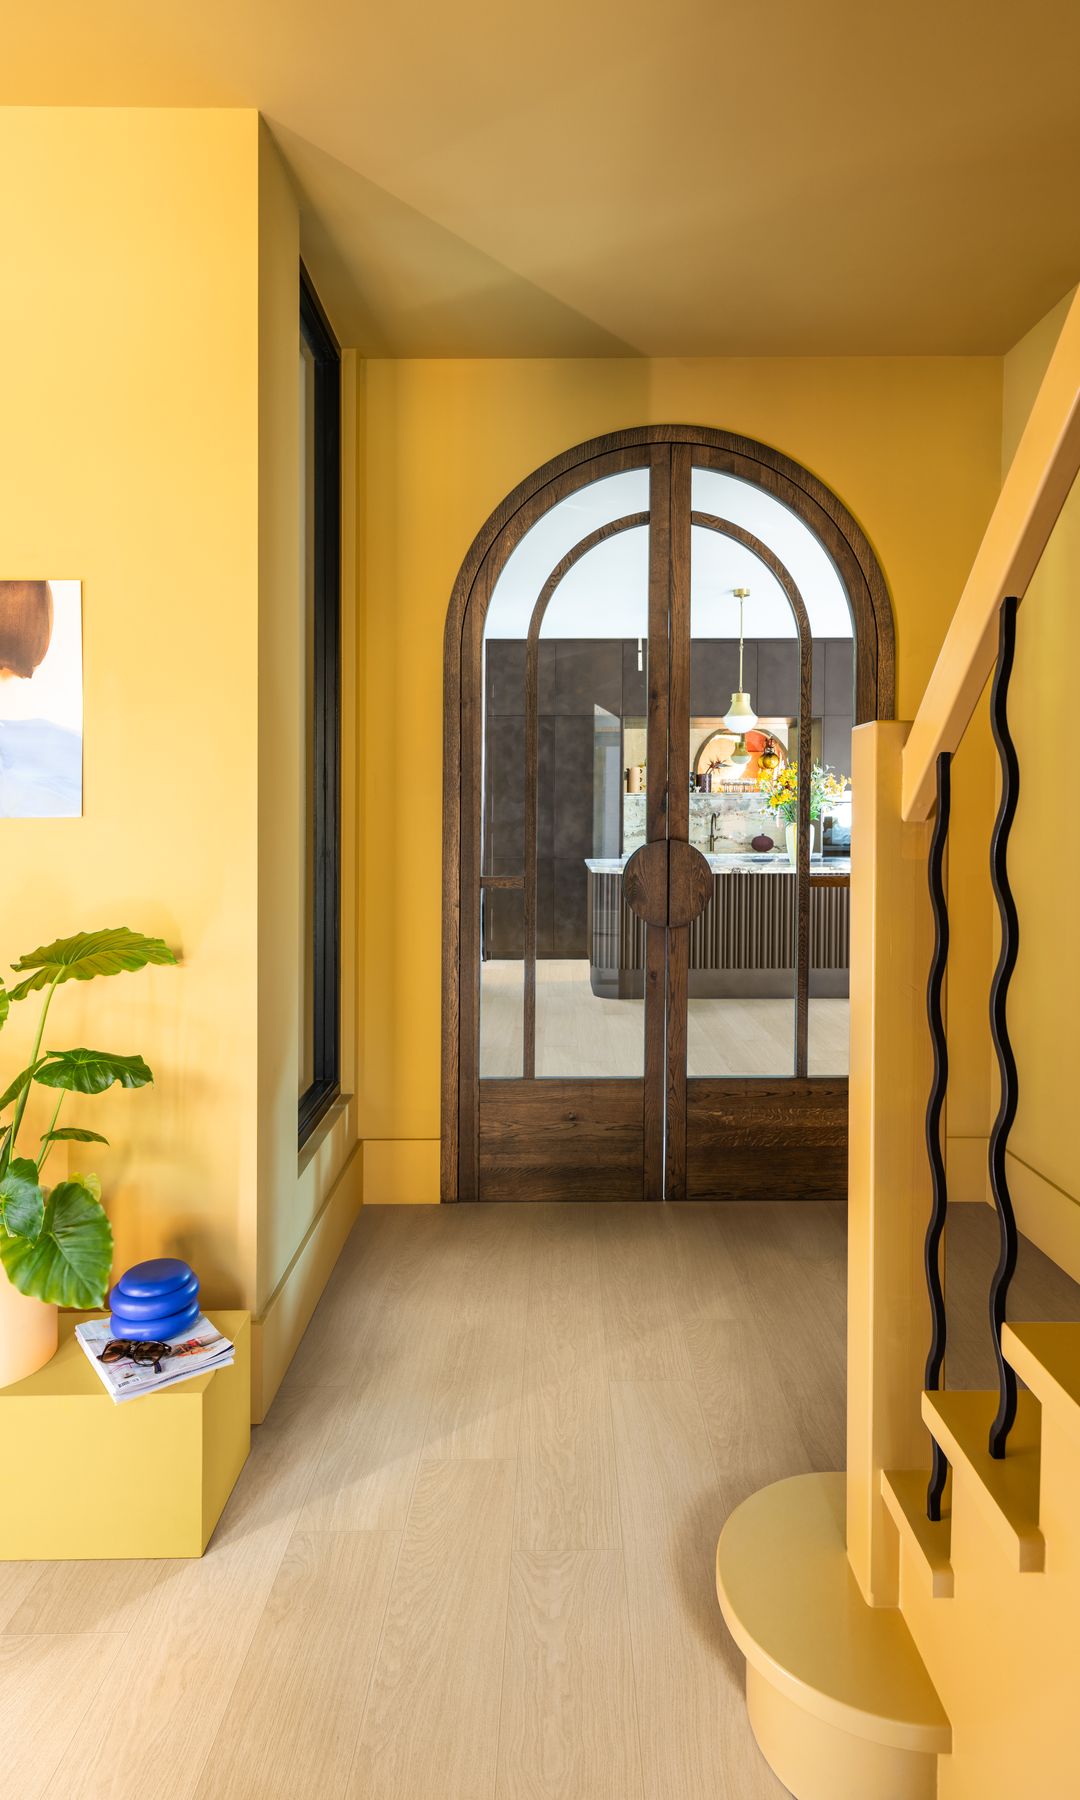 Zona de entrada a una casa pintada en color amarillo